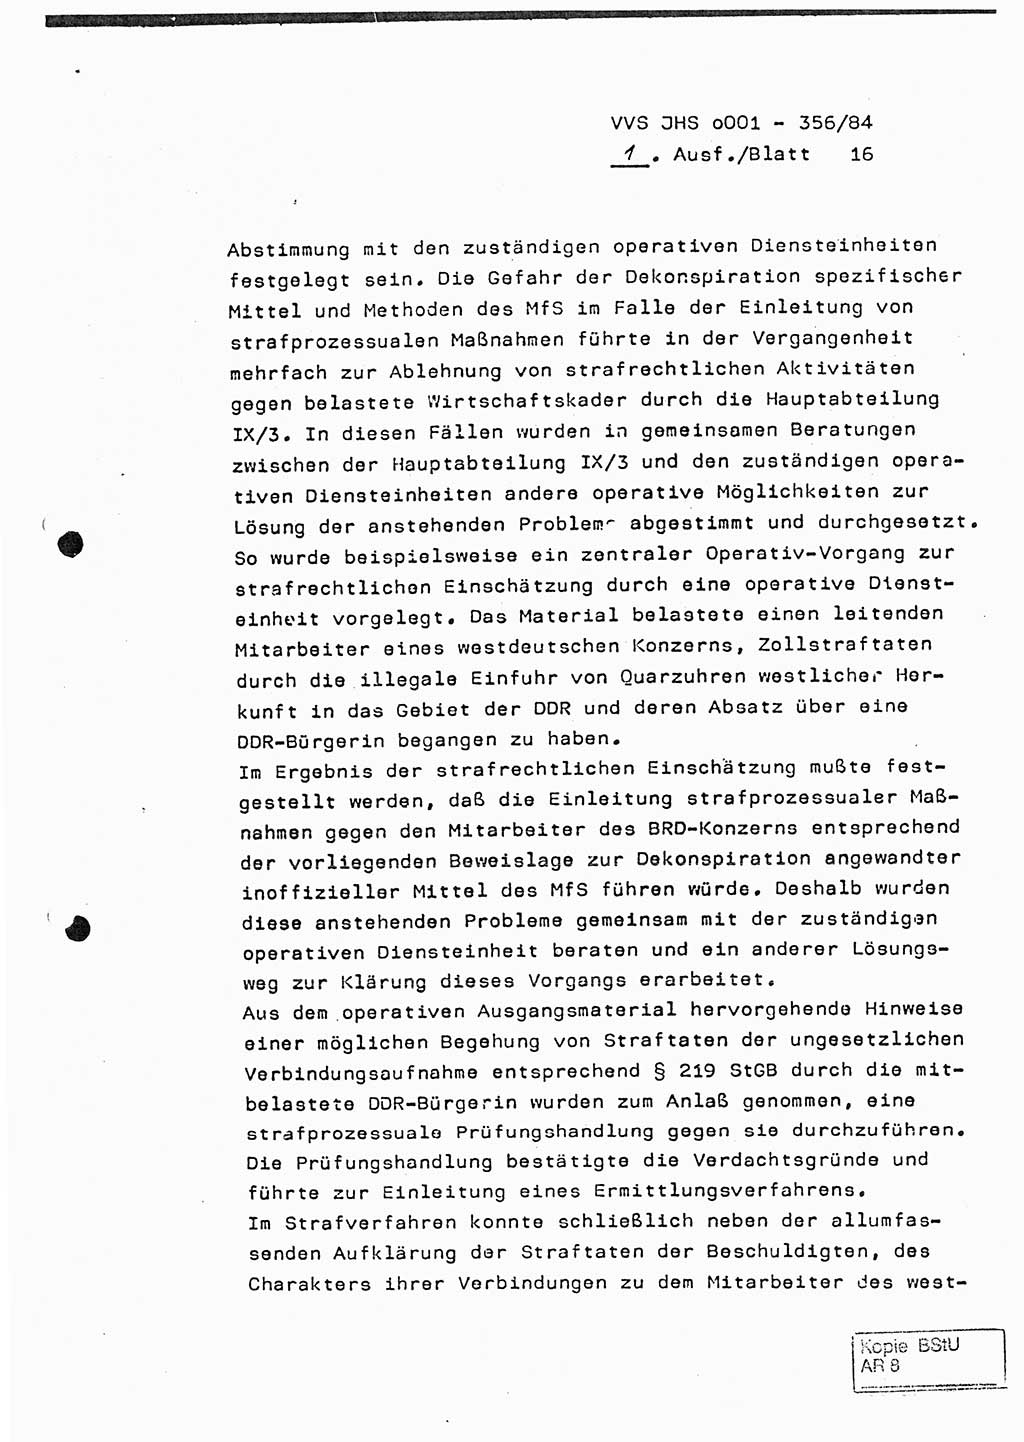 Diplomarbeit, Major Lutz Rahaus (HA Ⅸ/3), Ministerium für Staatssicherheit (MfS) [Deutsche Demokratische Republik (DDR)], Juristische Hochschule (JHS), Vertrauliche Verschlußsache (VVS) o001-356/84, Potsdam 1984, Seite 16 (Dipl.-Arb. MfS DDR JHS VVS o001-356/84 1984, S. 16)